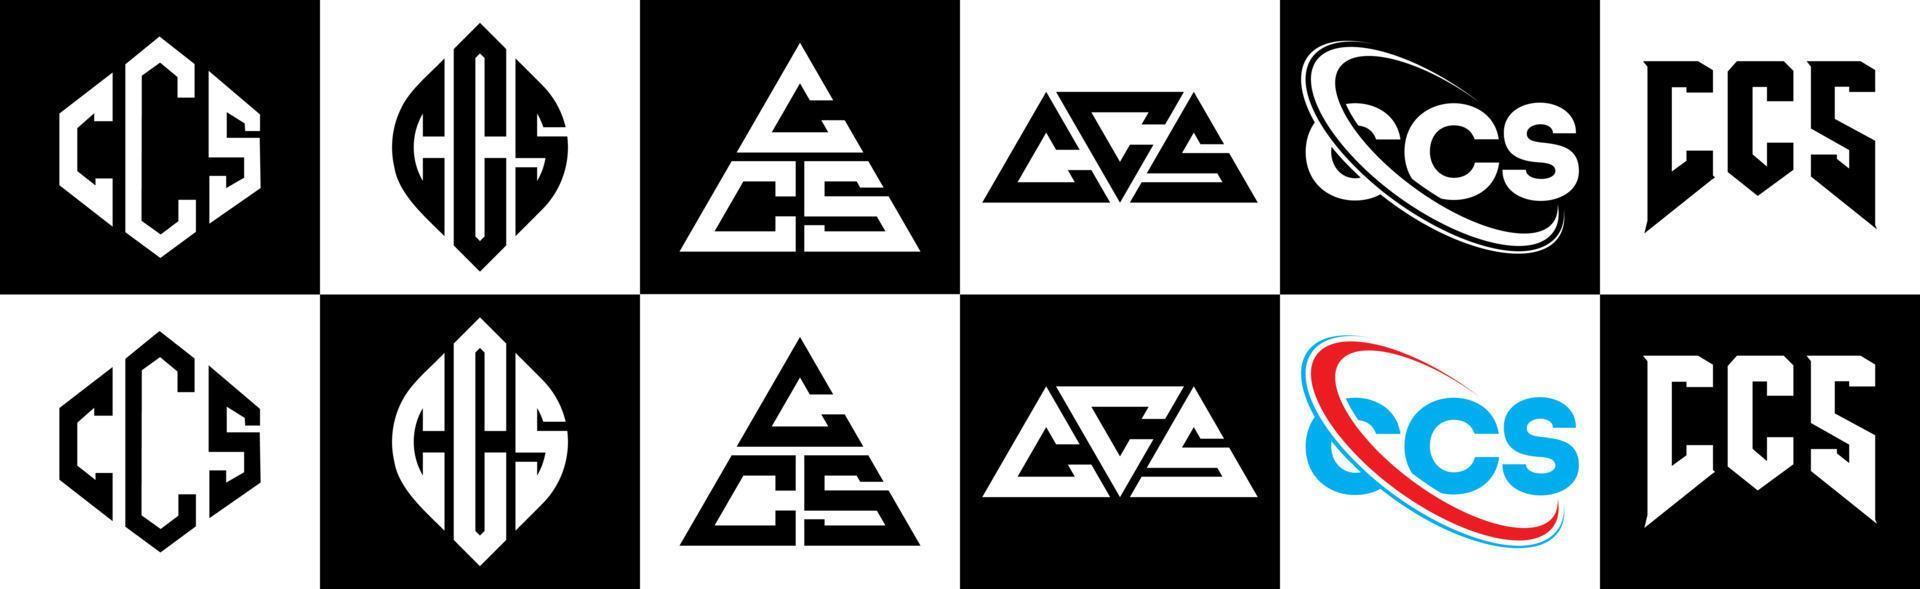 création de logo de lettre ccs en six styles. ccs polygone, cercle, triangle, hexagone, style plat et simple avec logo de lettre de variation de couleur noir et blanc dans un plan de travail. logo ccs minimaliste et classique vecteur